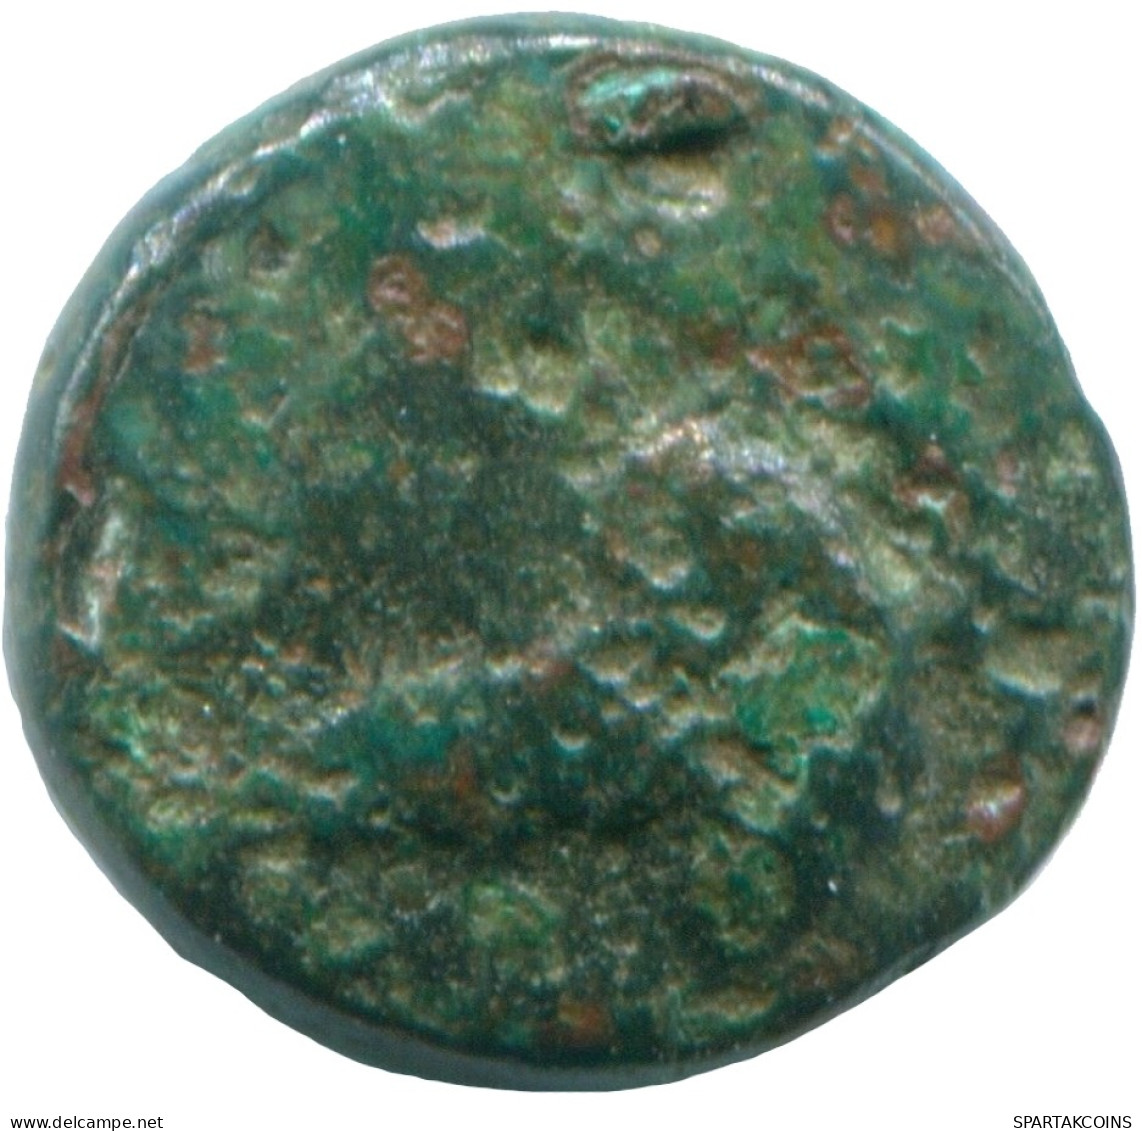 Authentique Original GREC ANCIEN Pièce #ANC12589.6.F.A - Griechische Münzen